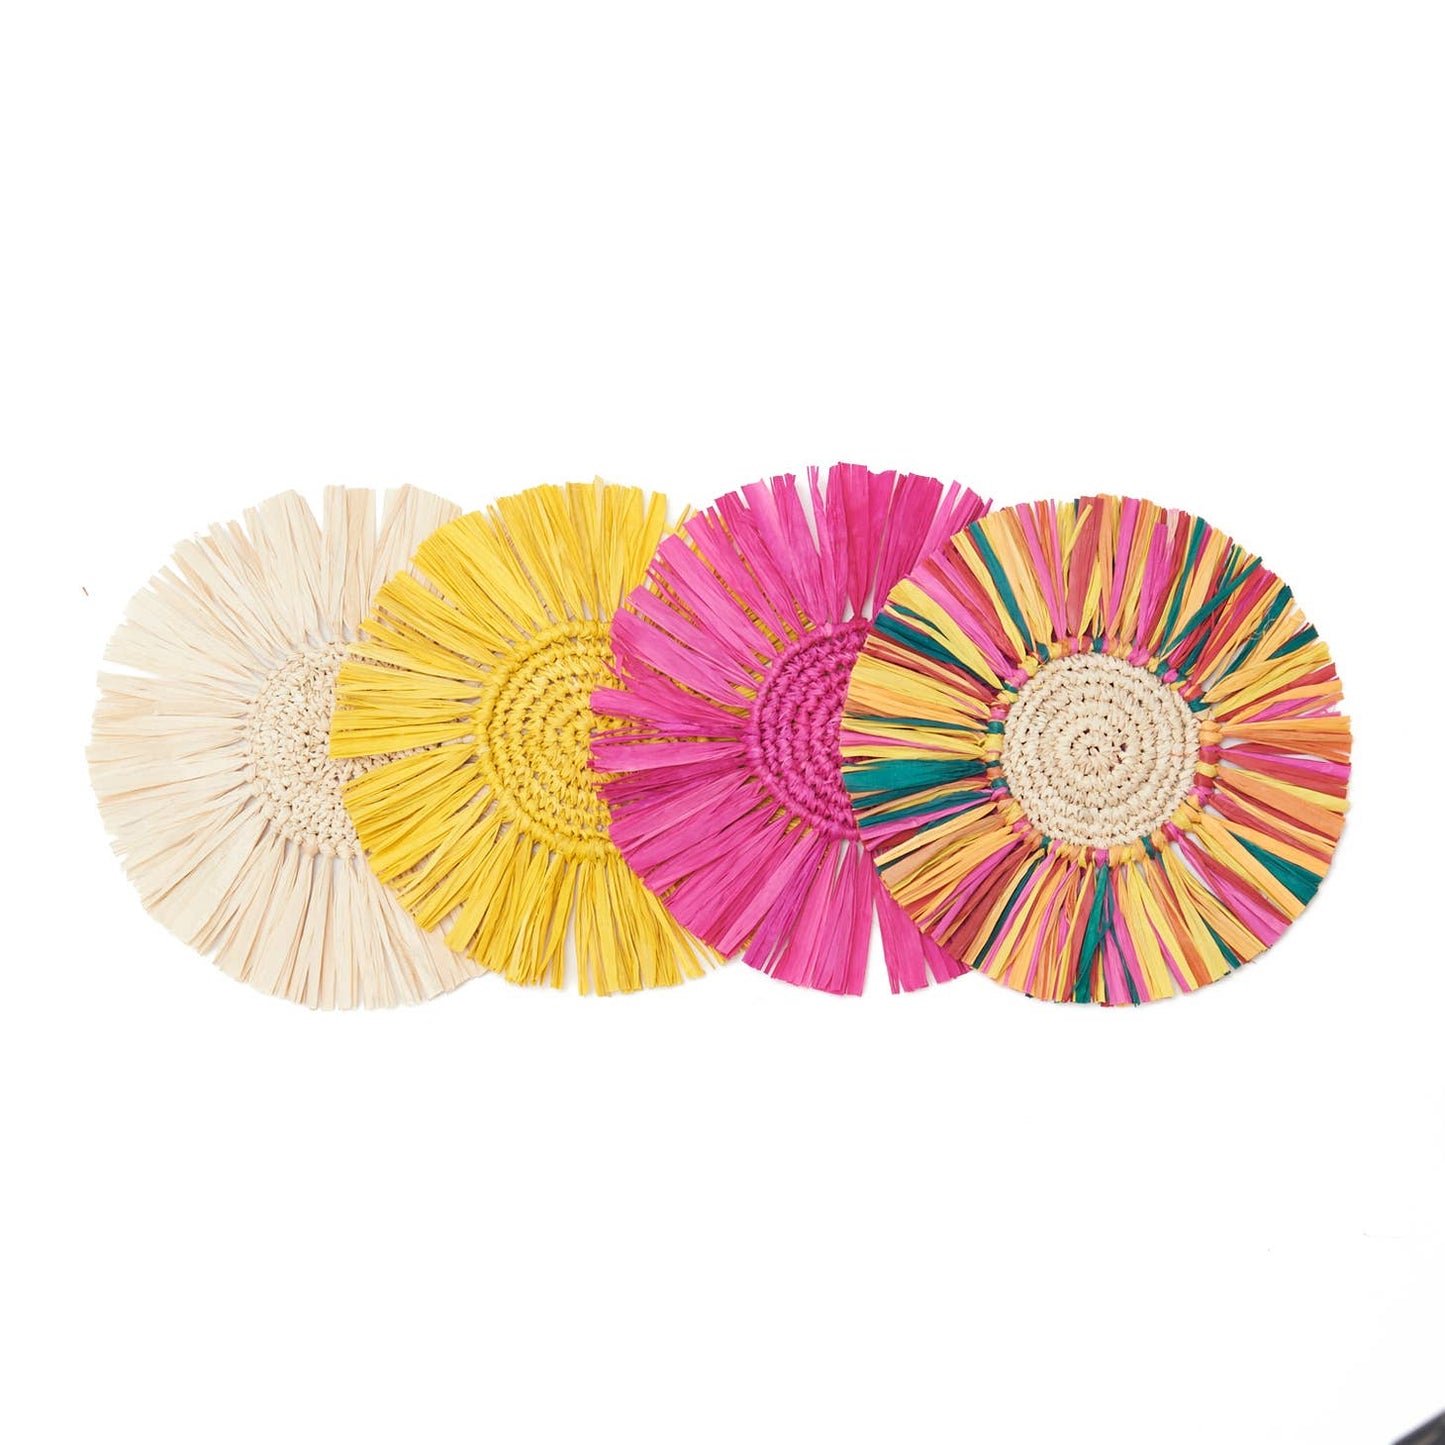 Pahiyas Woven Raffia Fringe Coasters Multi Rainbow, Set of 4